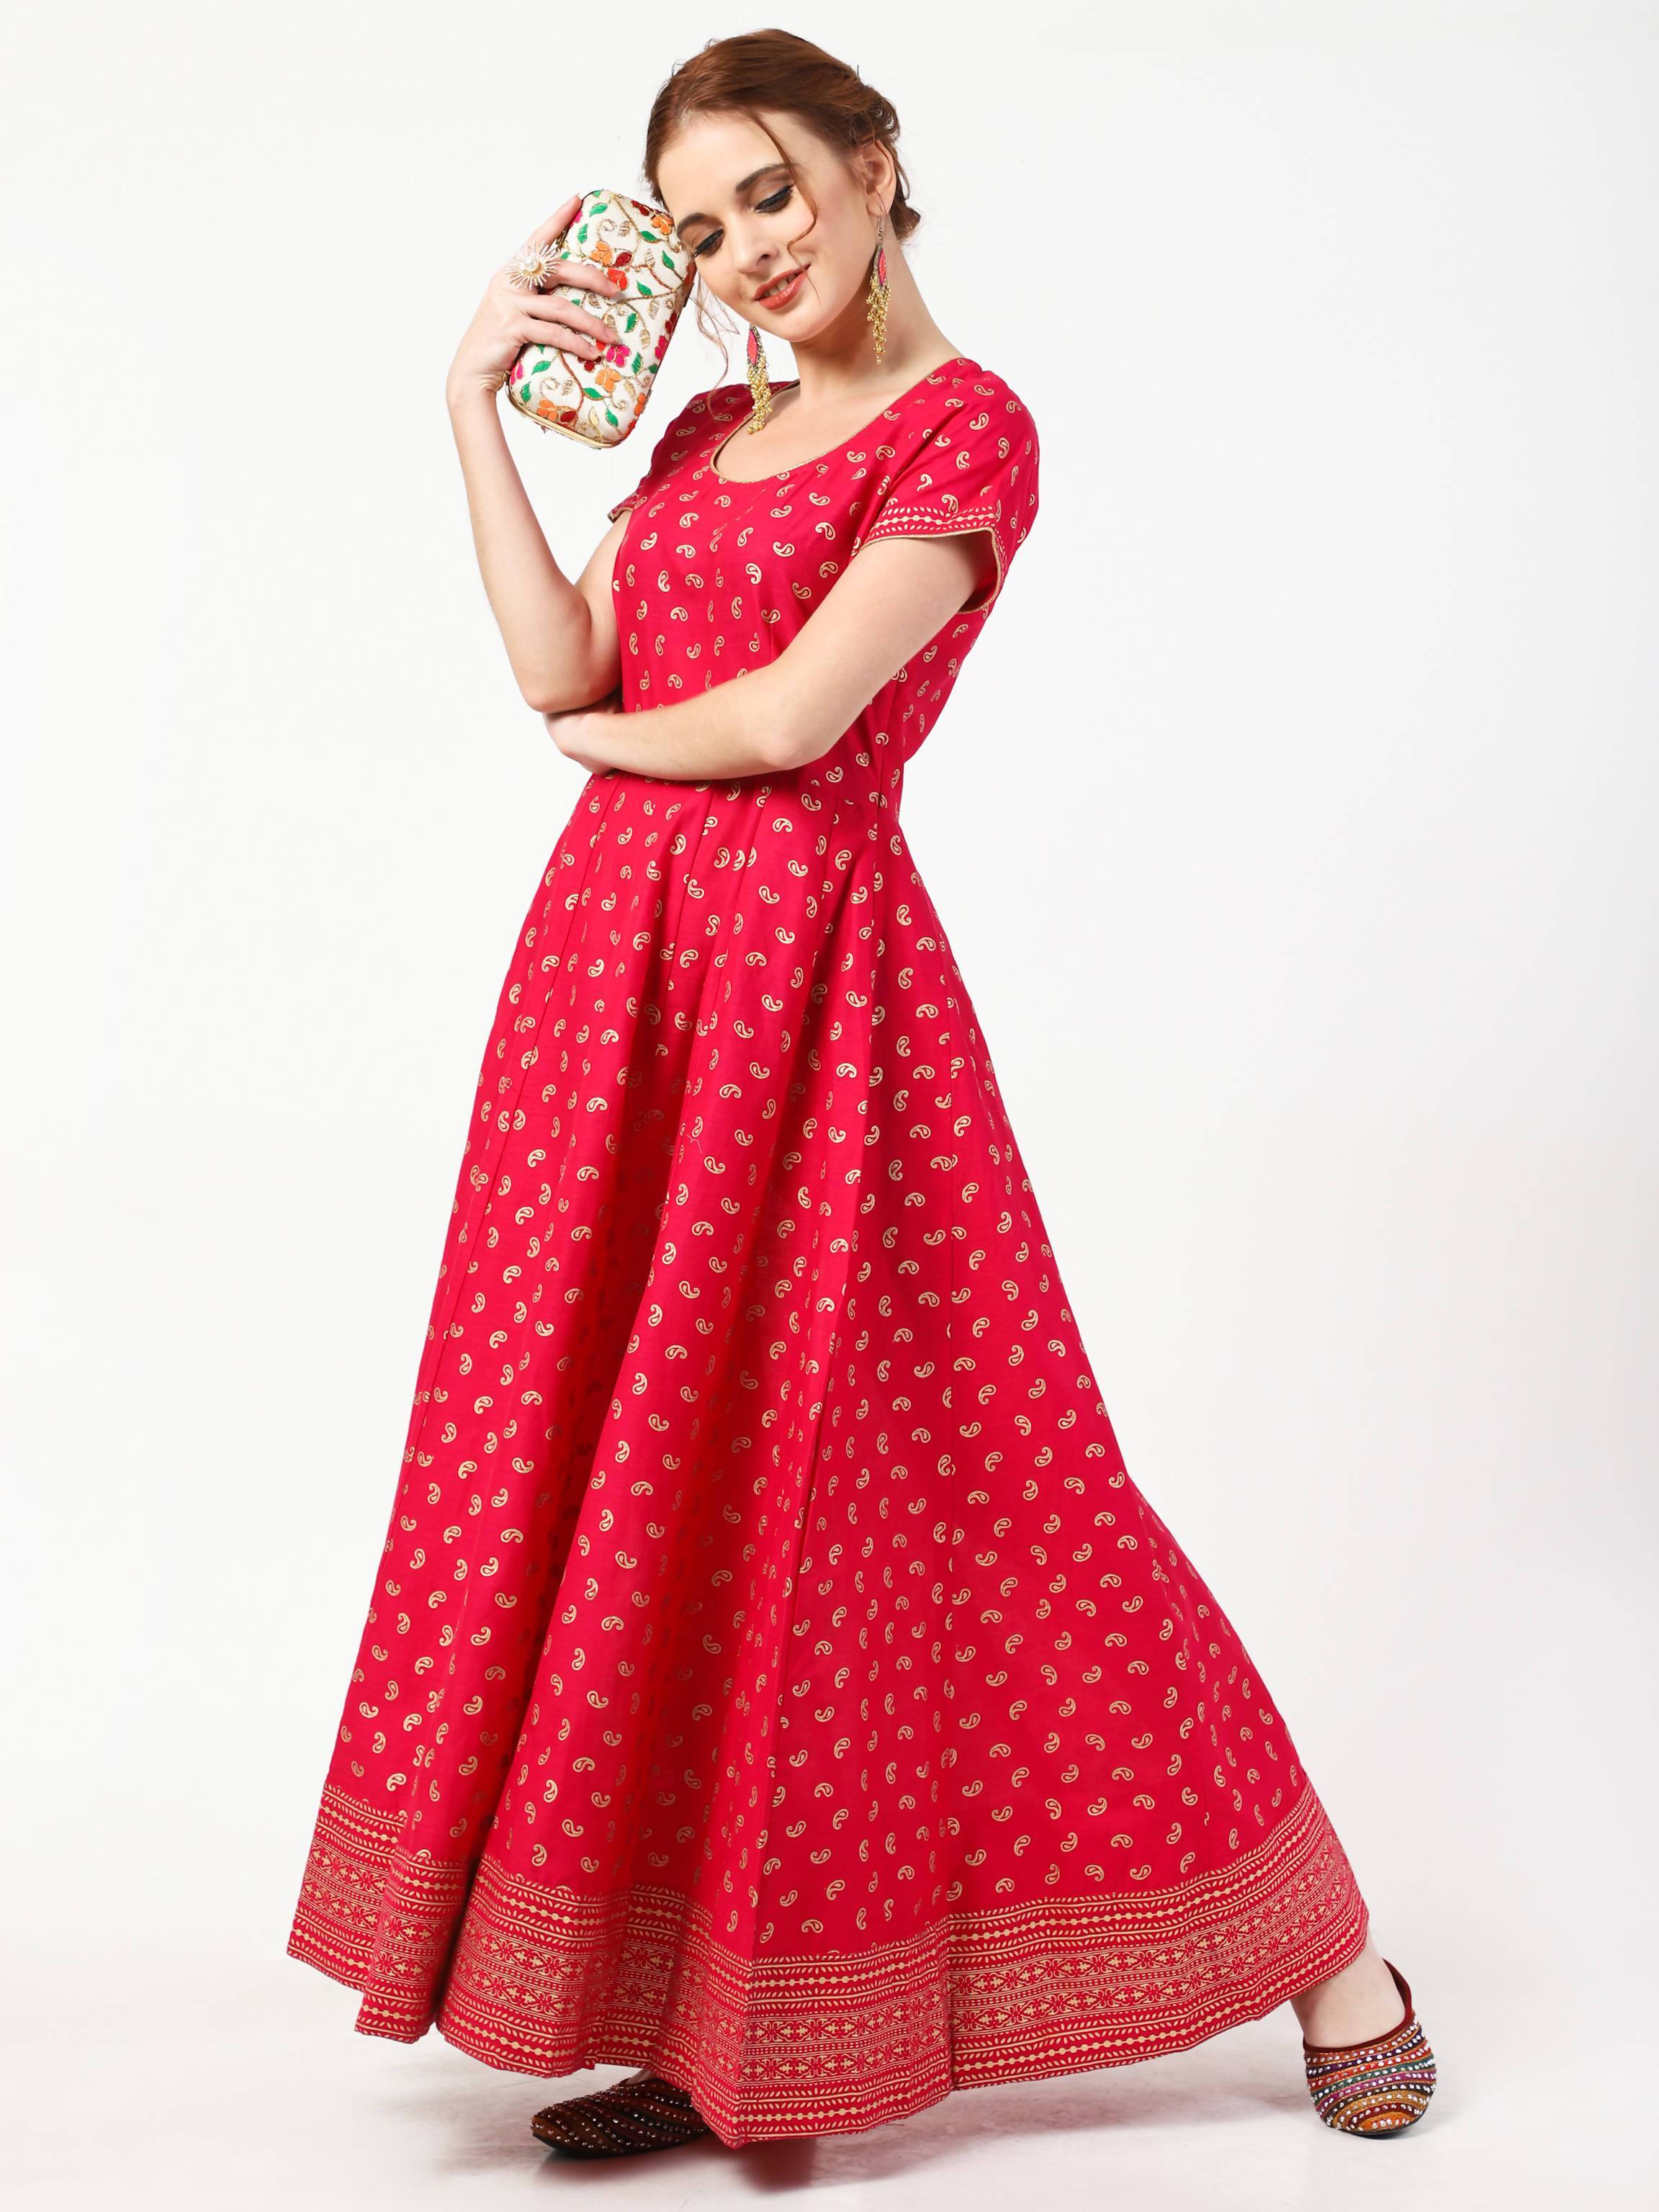 Women's Deep Pink Cotton & Silk Hand Block Print Long Dress With Silk Dupatta Set - Cheera